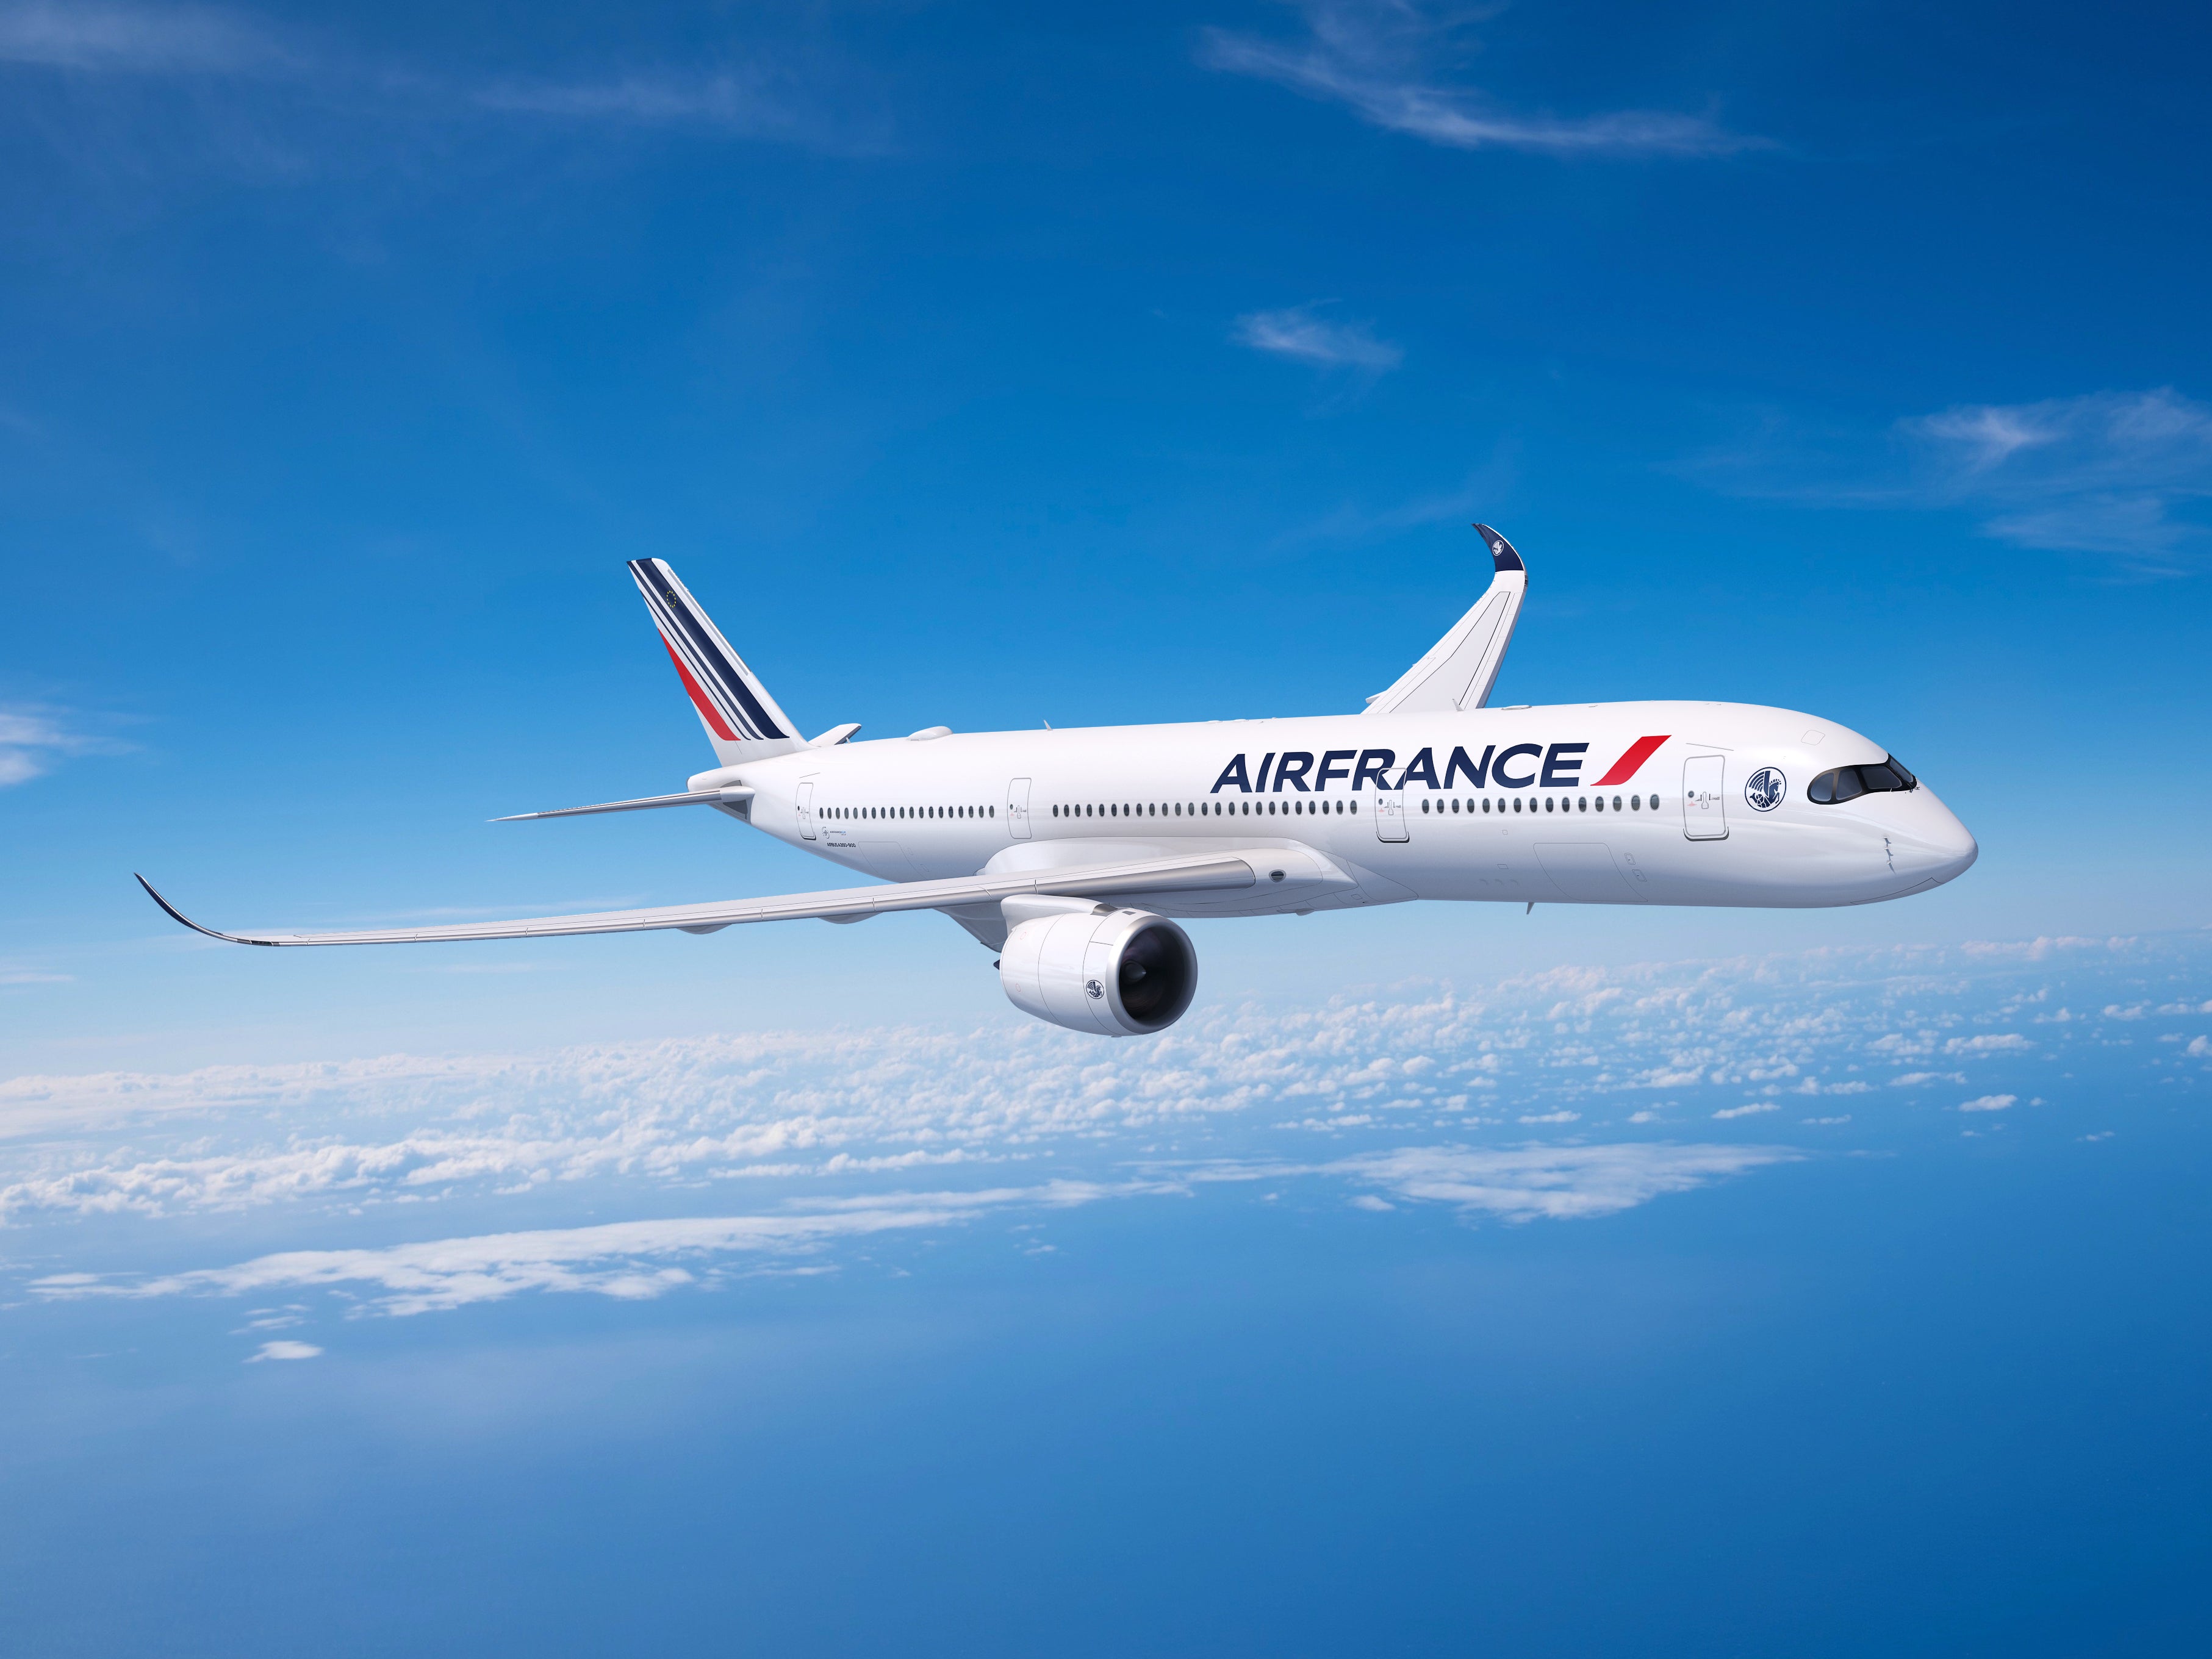 Air France-KLM, plus grand exploitant au monde de l'Airbus A350